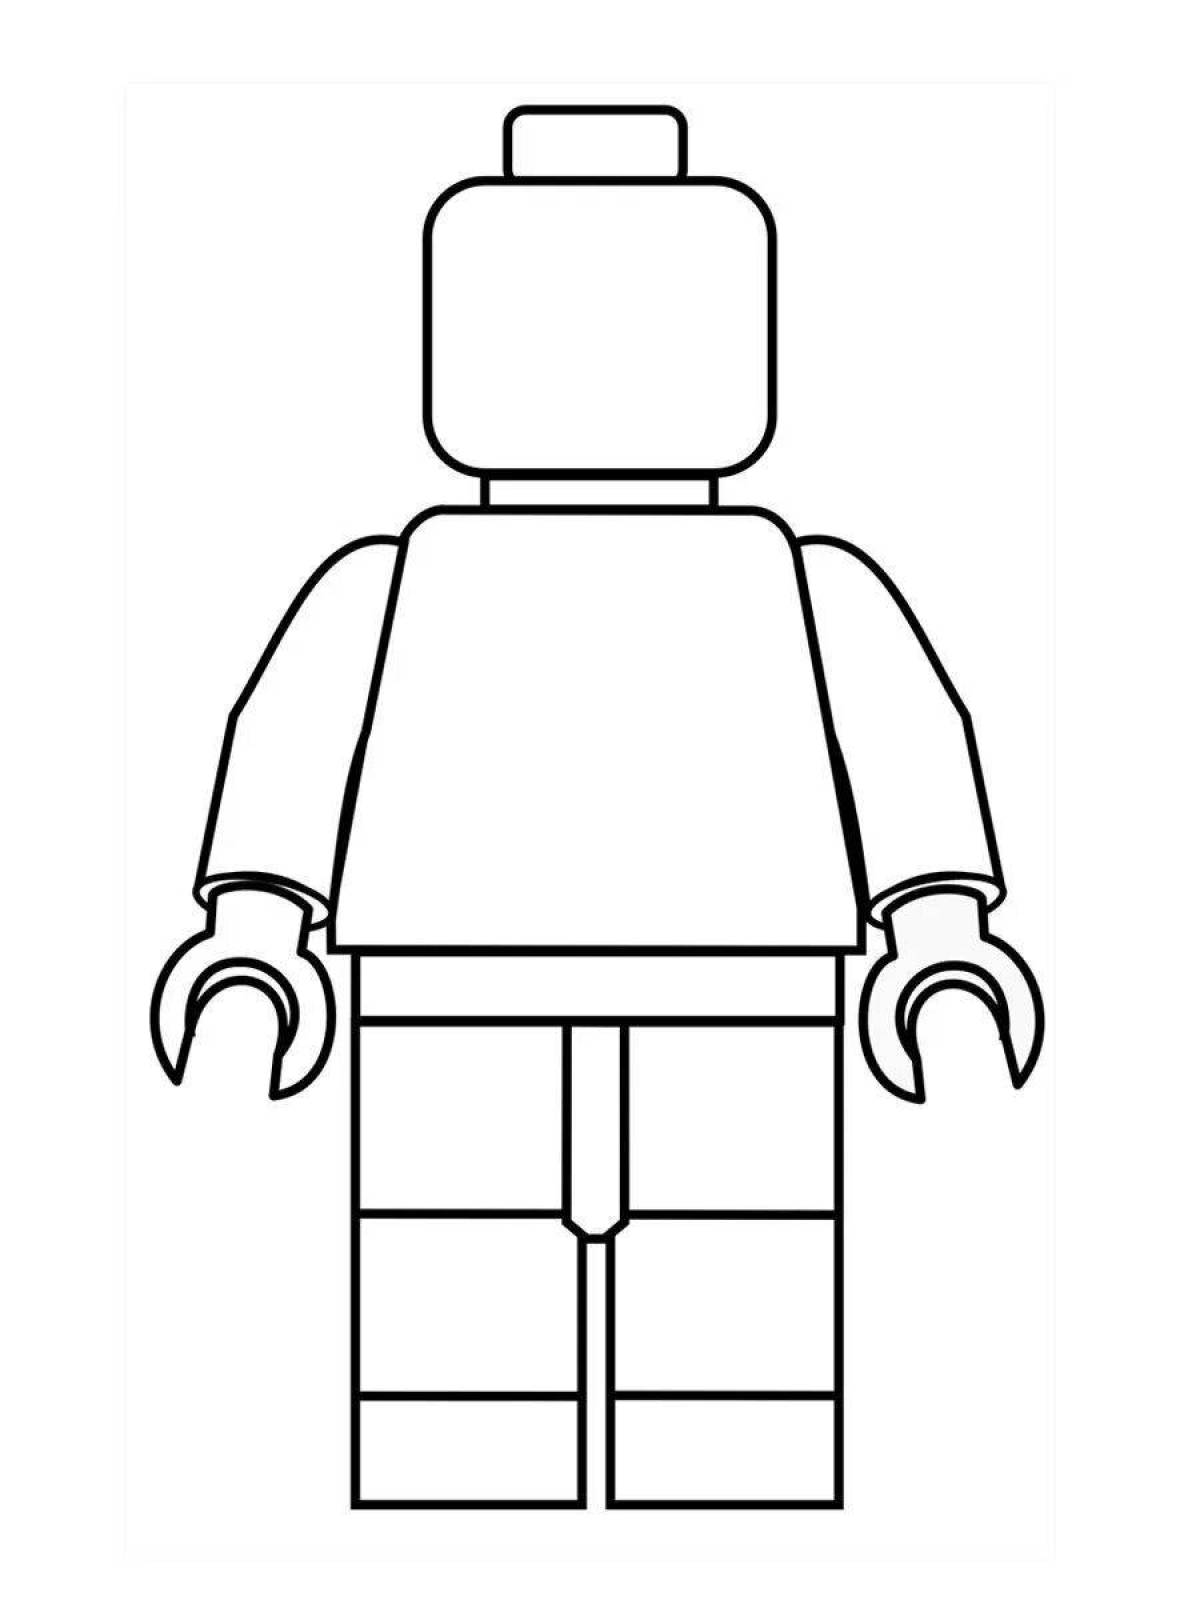 Lego little men for kids #3